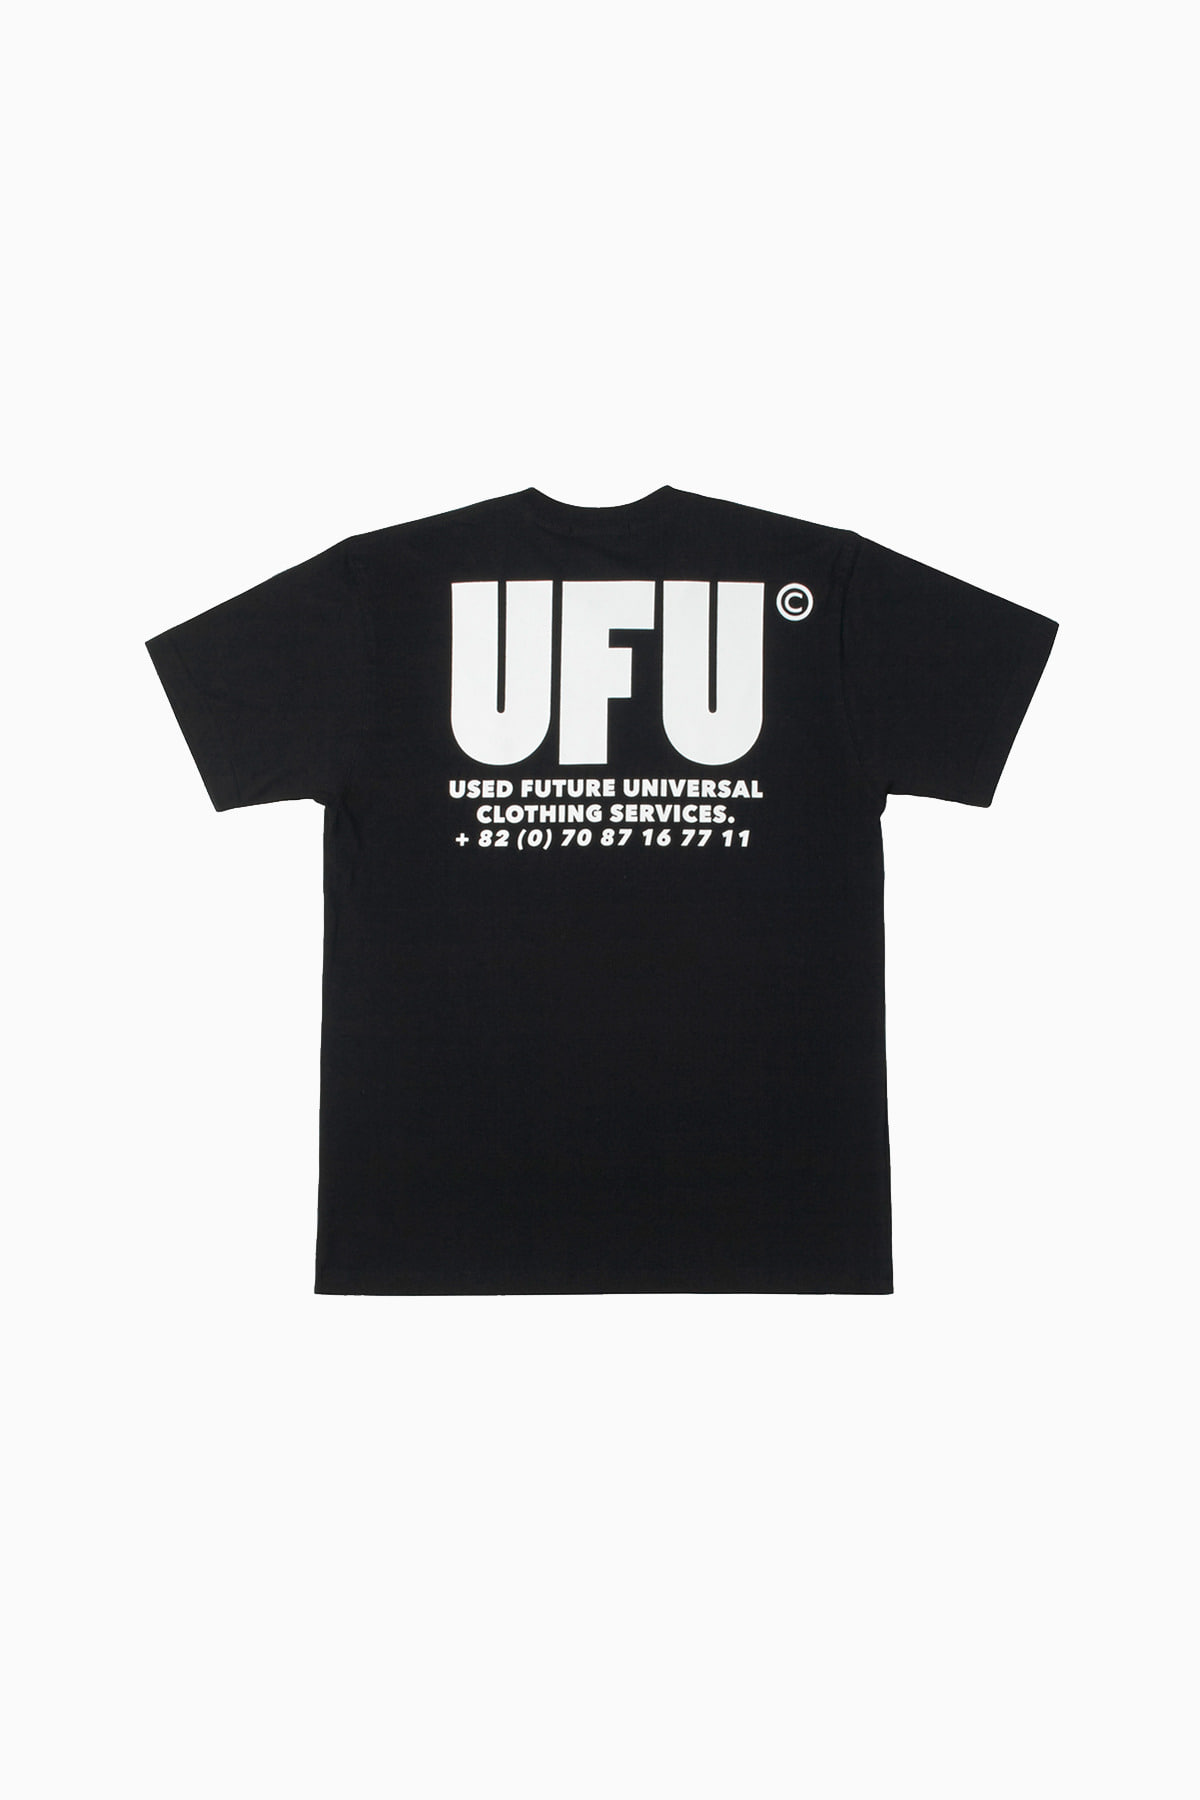 UFU AD T-SHIRT_BLACK